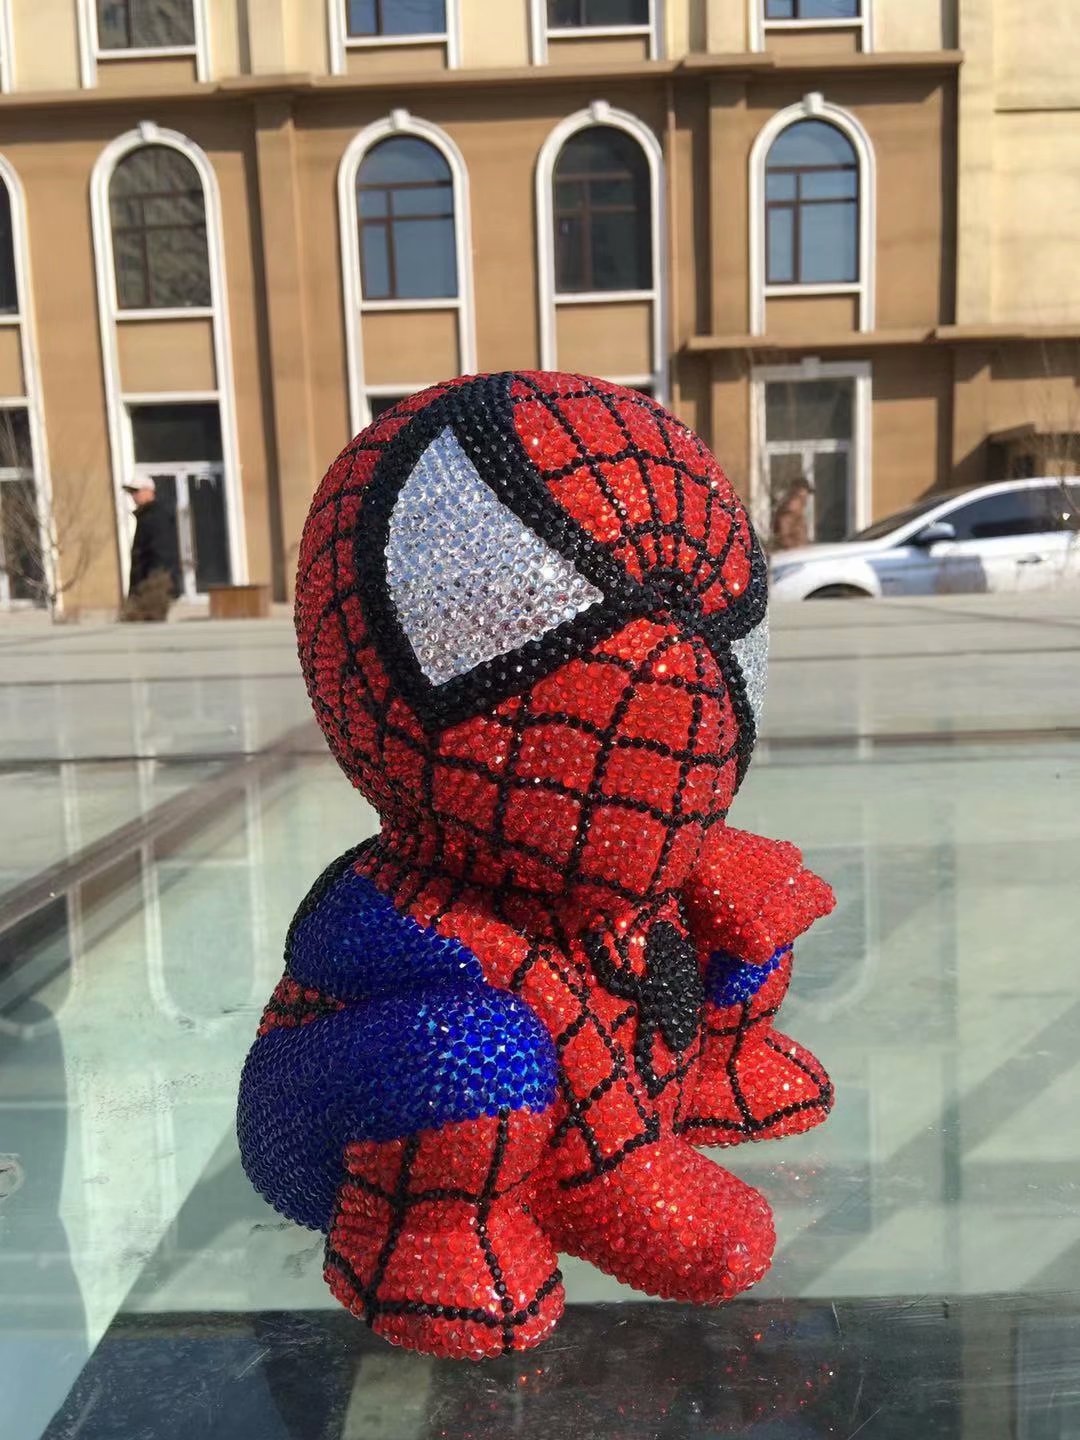 DIY Spiderman - Kristall Strass Full Diamond Malerei Sparschwein (Kein Kleber)